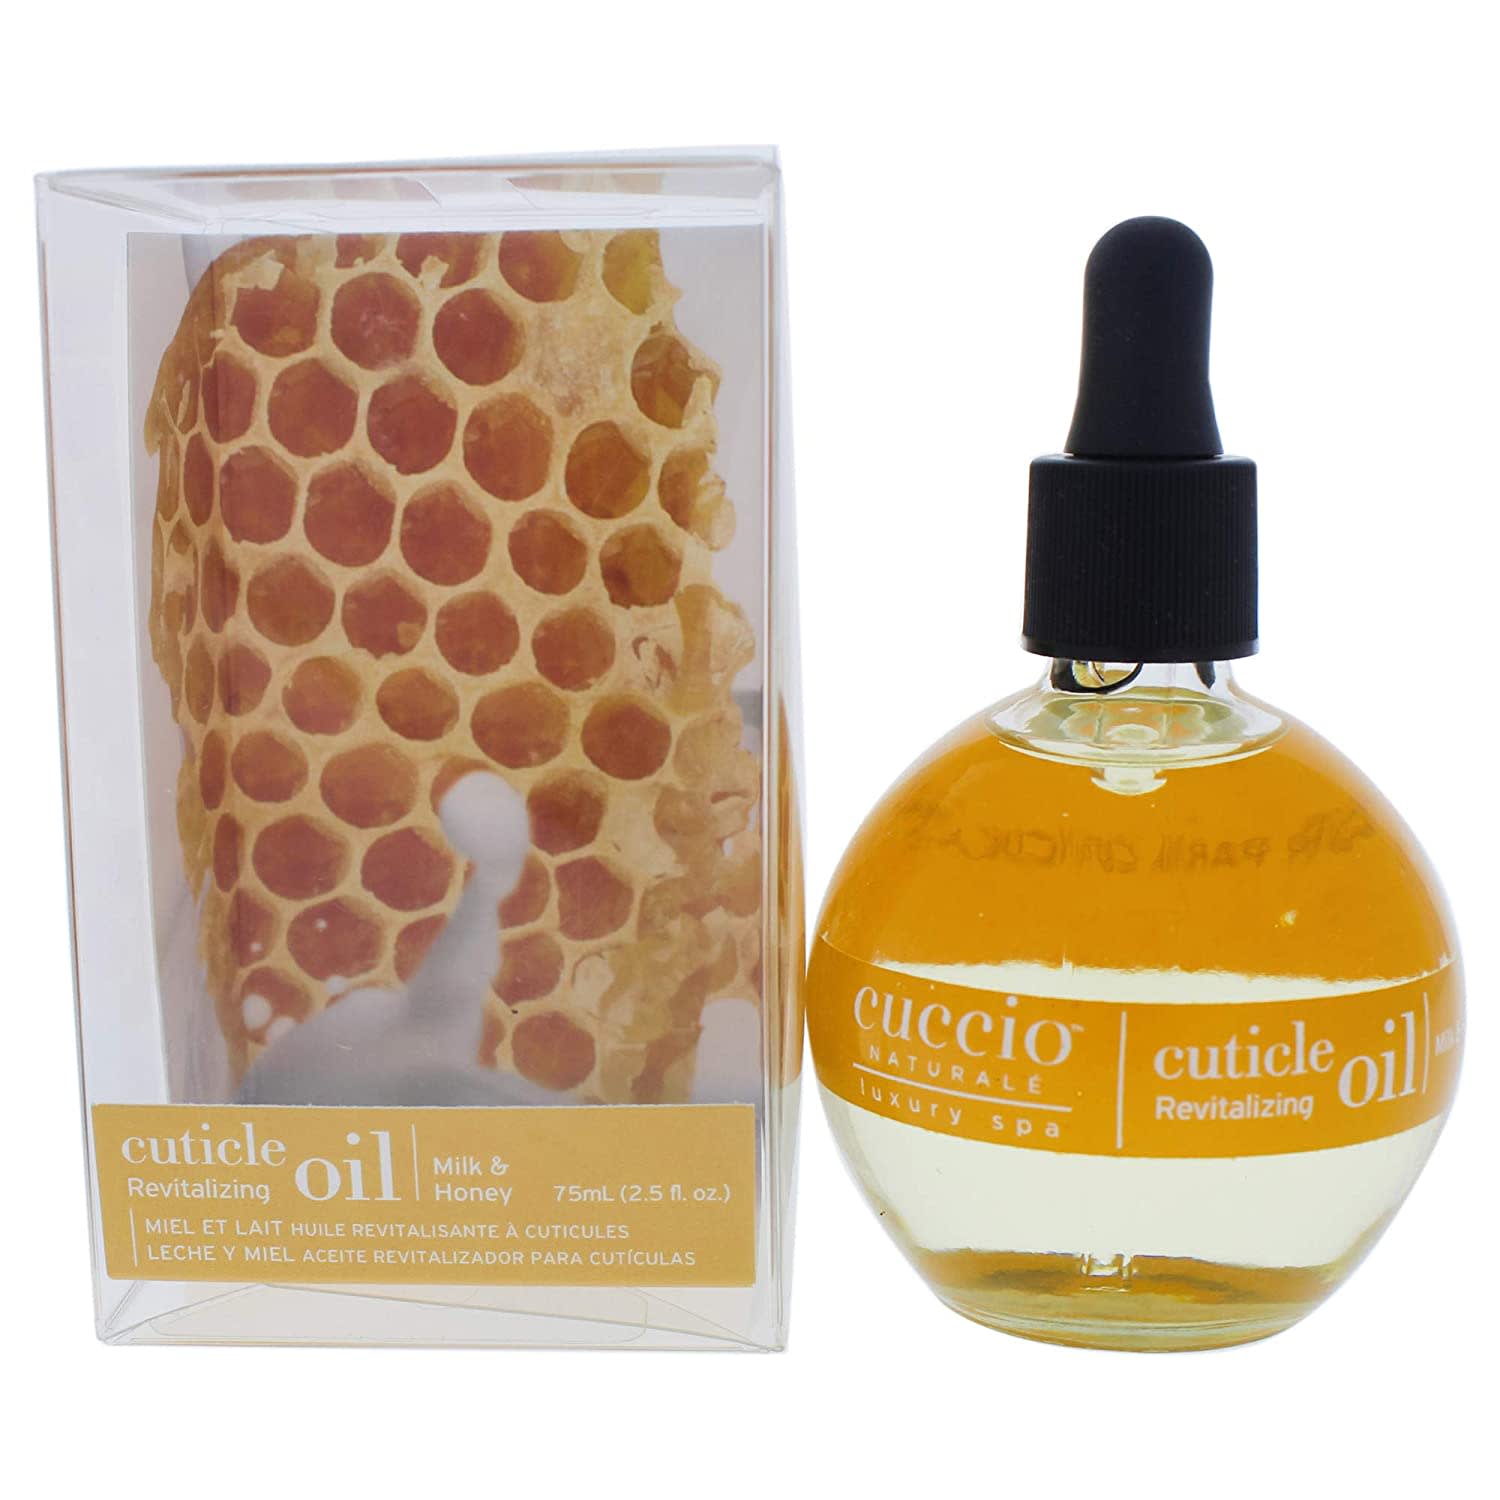 Cuccio Oil Nail & Cuticle Milk and Honey